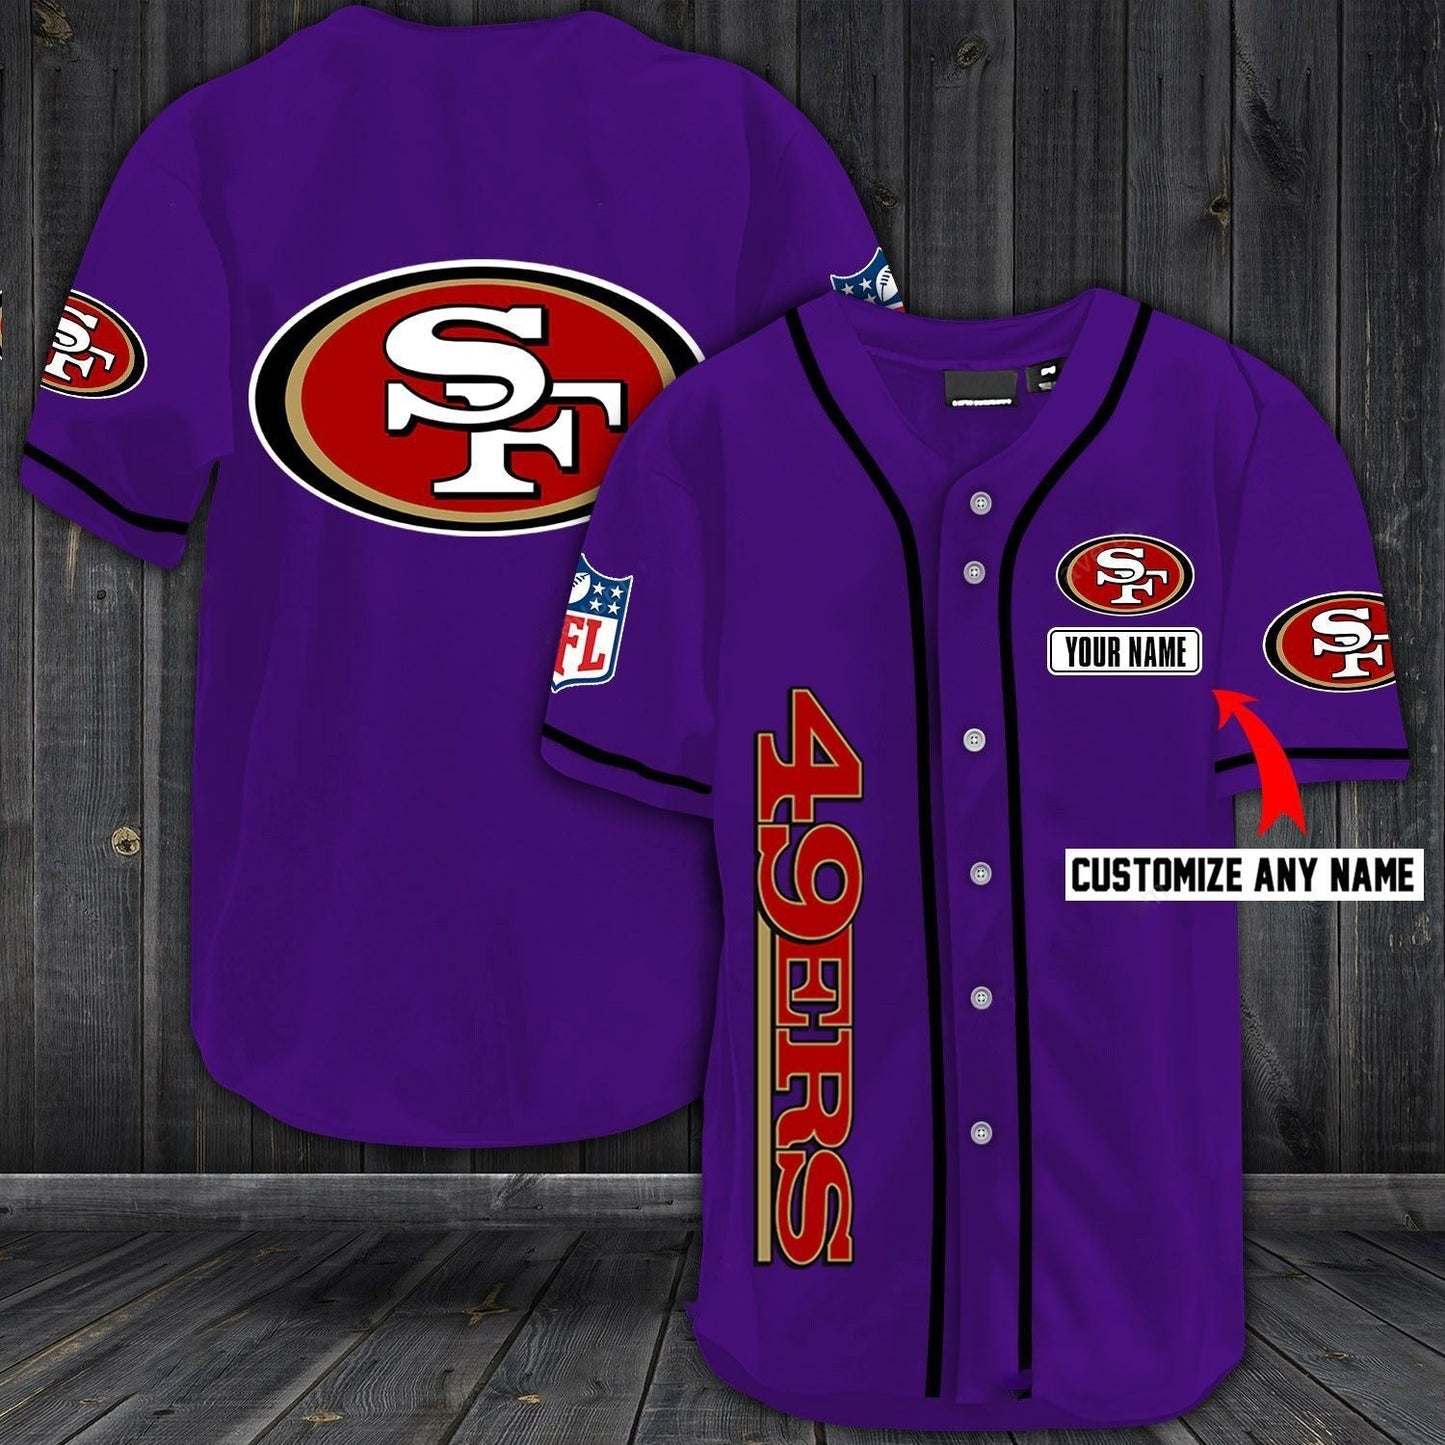 Football T-Shirts SF.49ers Baseball Customized Jersey